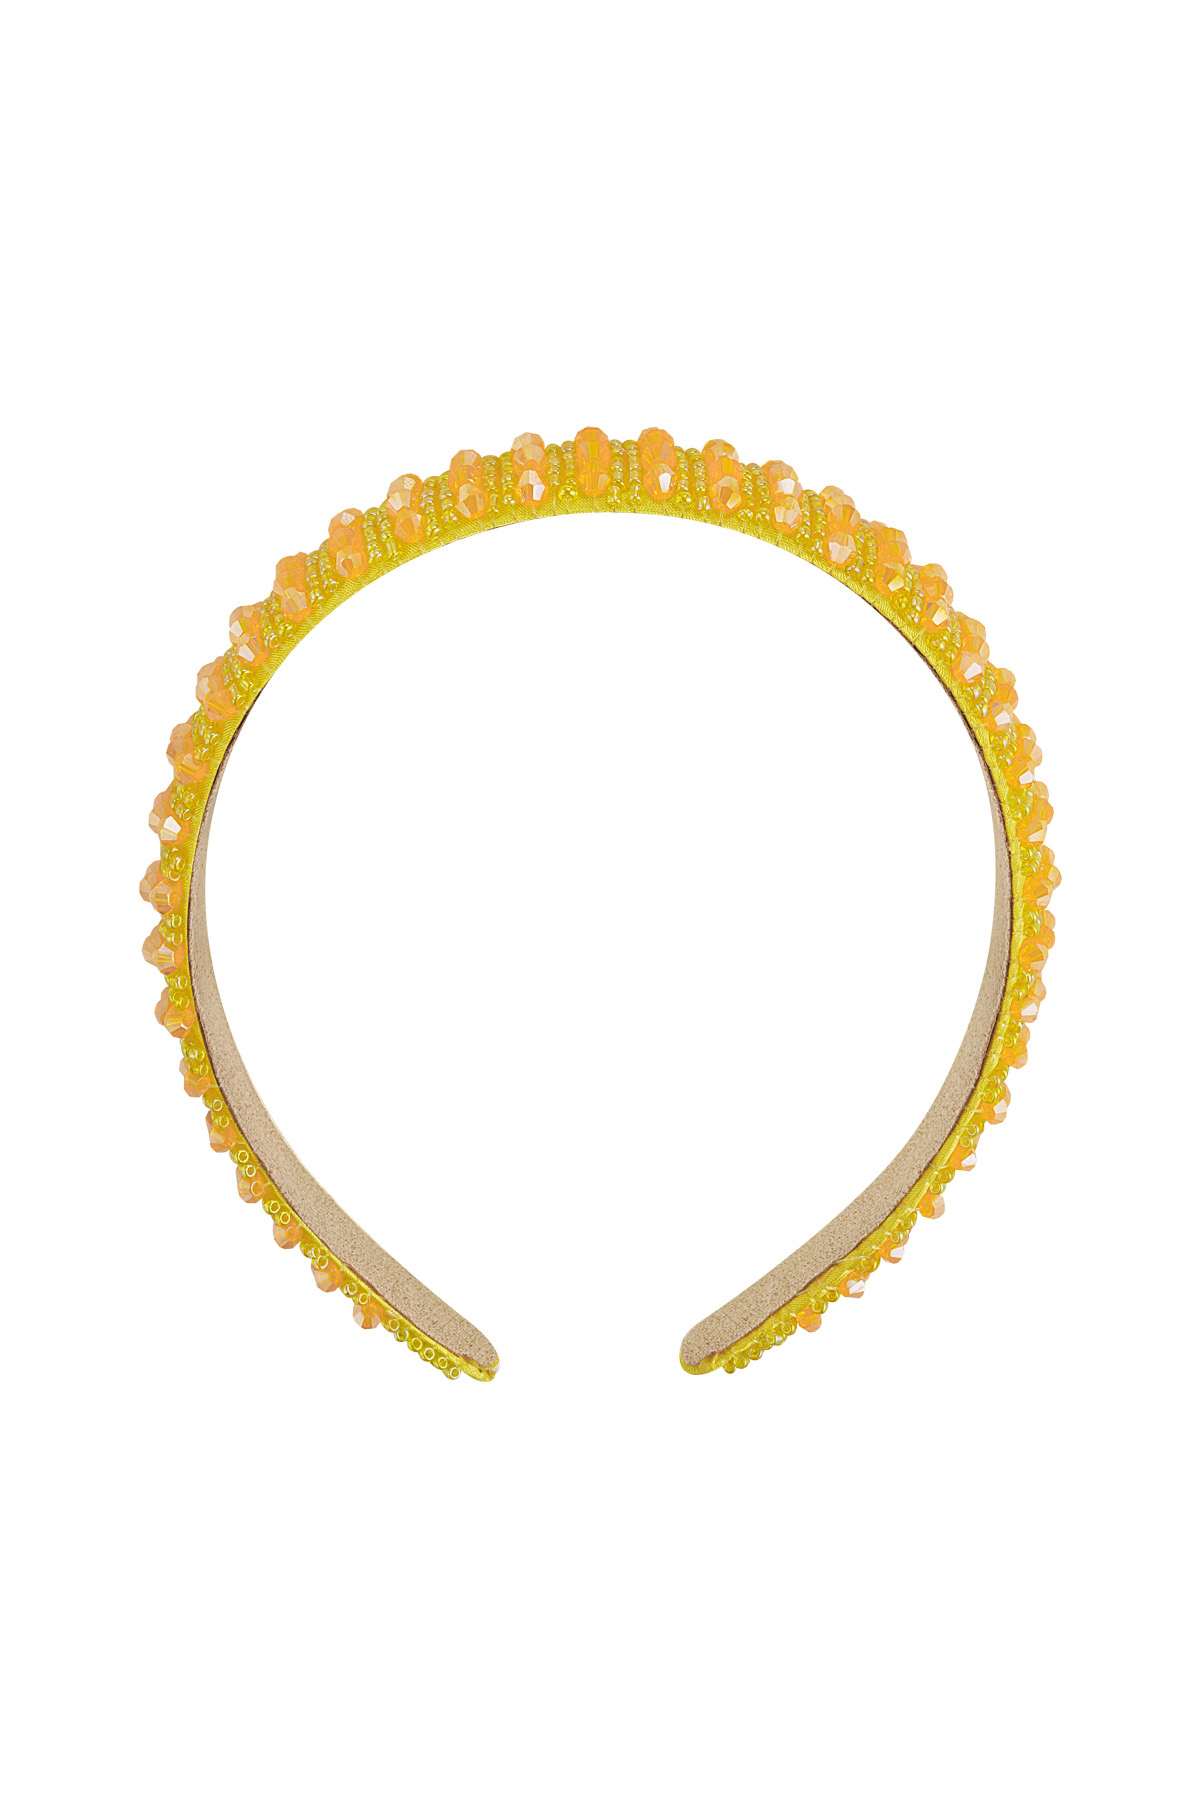 Hairband rhinestones - yellow Plastic 